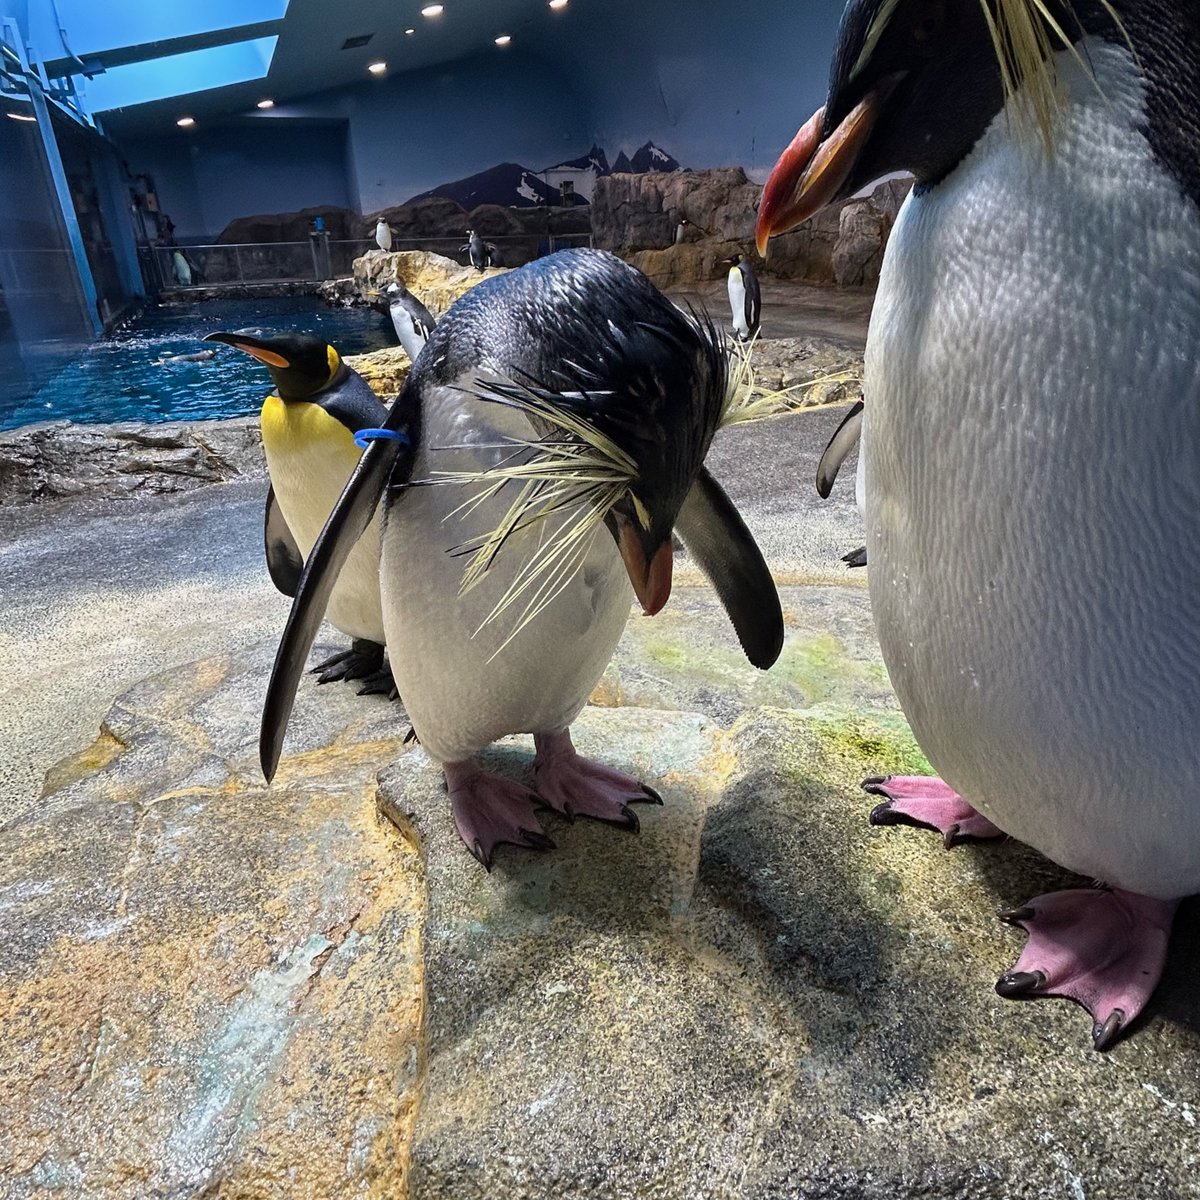 ※イベント中止のお知らせ 高病原性鳥インフルエンザウィルスが国内の家禽で確認されました。その為、 5/3（金）～当面の間、 ふれあいペンギンビーチのイベントを中止とさせて頂きます。詳しくは公式HPをご覧ください。ご迷惑をおかけしますが、ご了承下さい。 #長崎ペンギン水族館